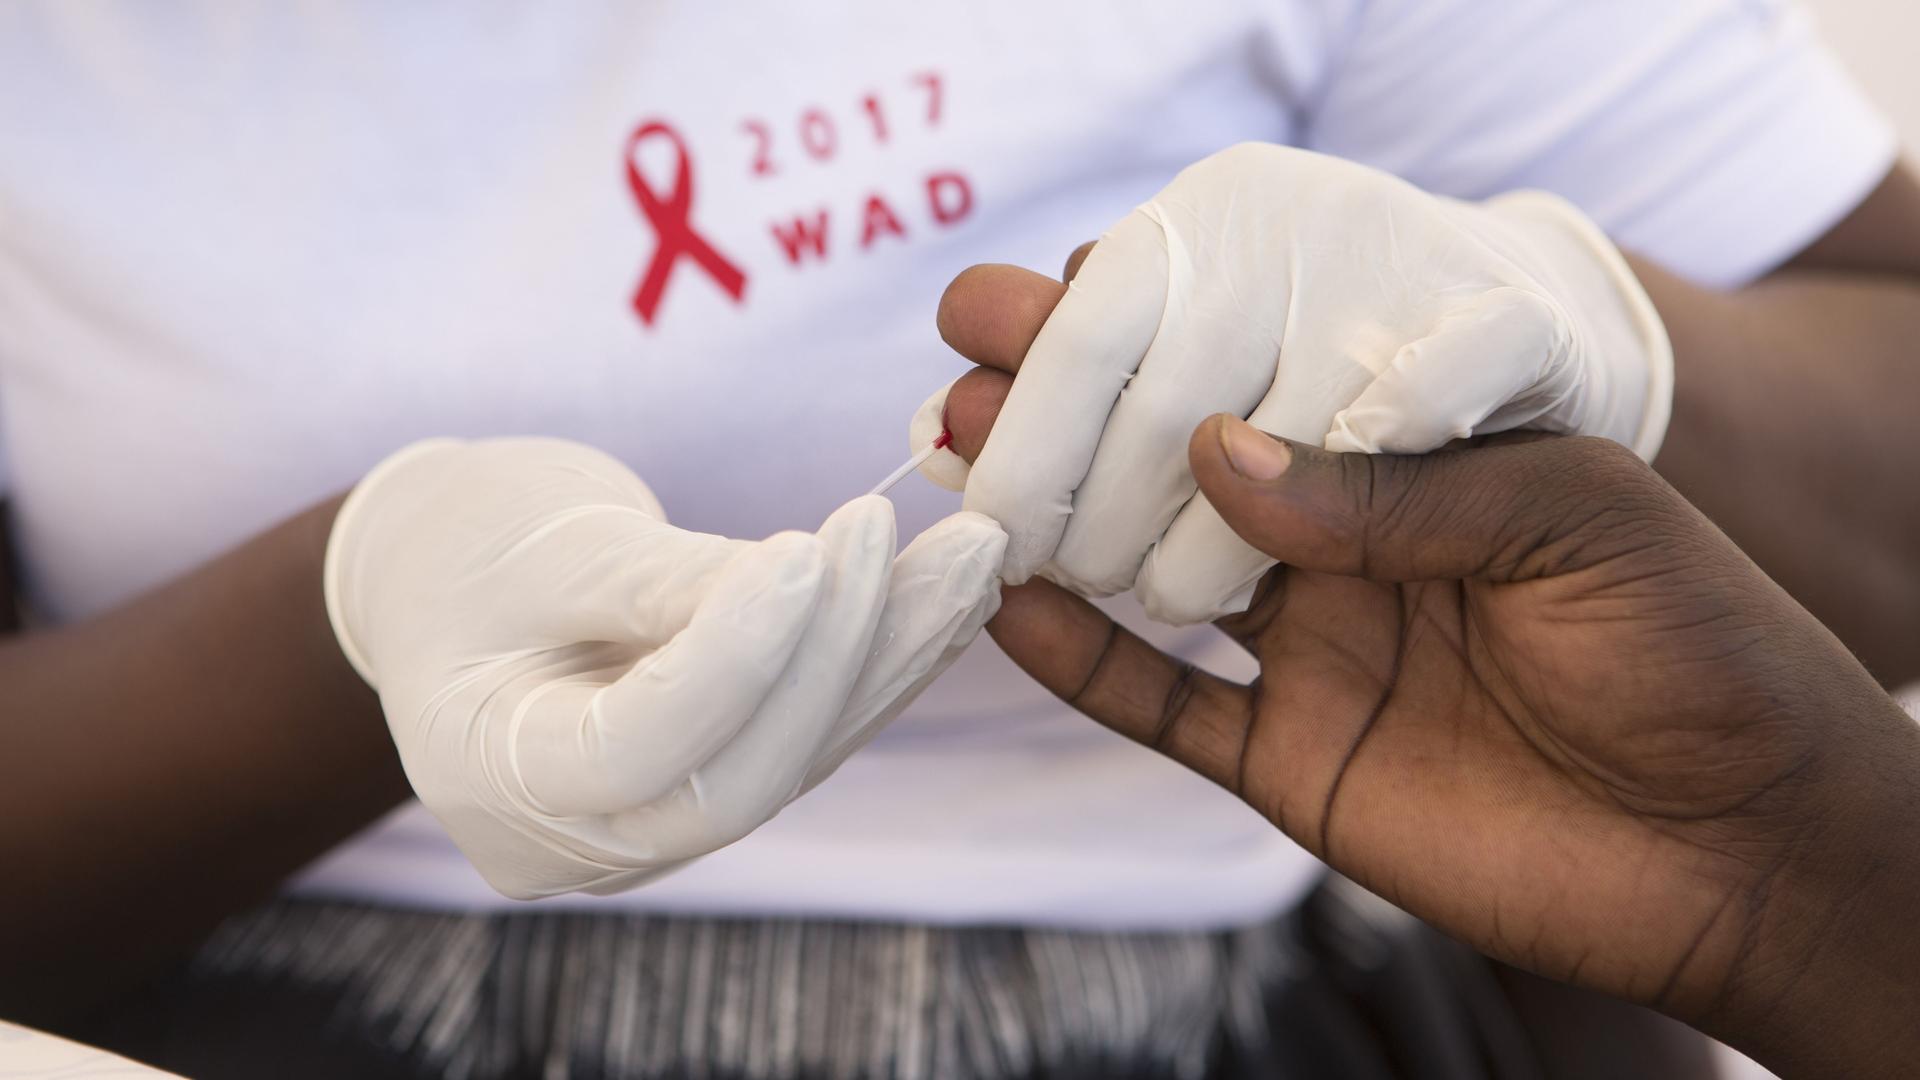 Ruandas Kampf gegen Aids - Fast am Ziel - mithilfe von Aufklärung und medizinischer Versorgung